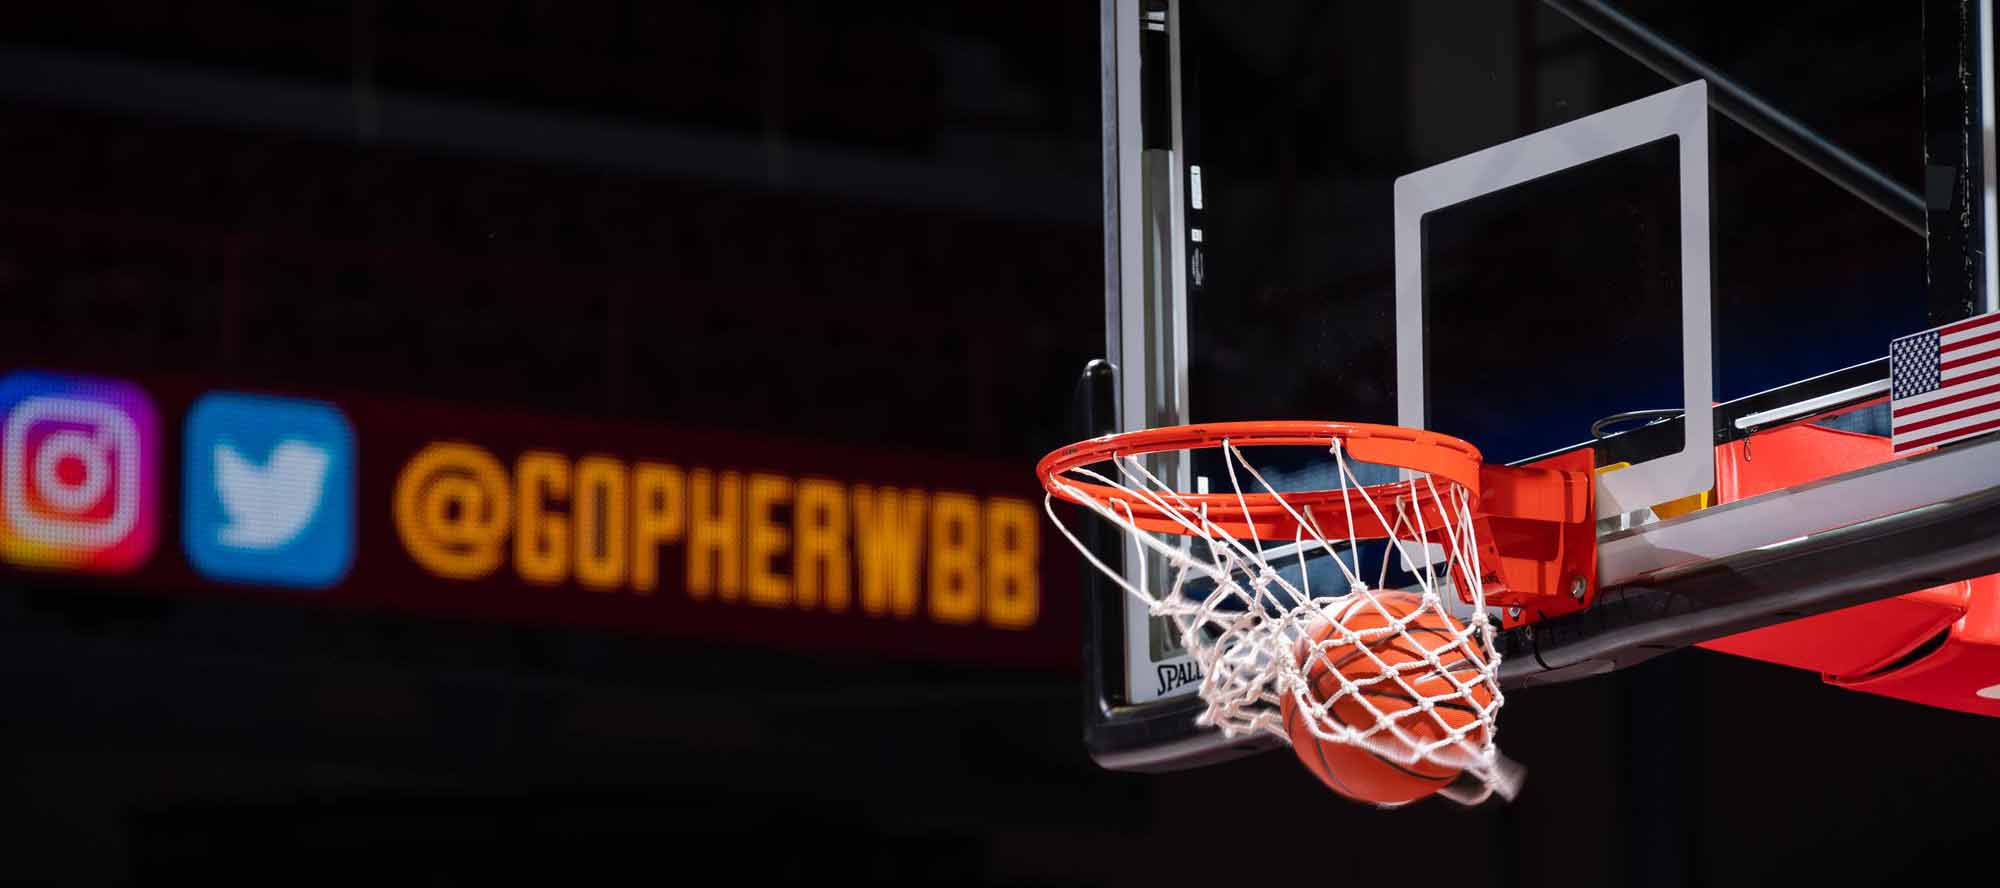 Big 12 Conference 2021-22 basketball